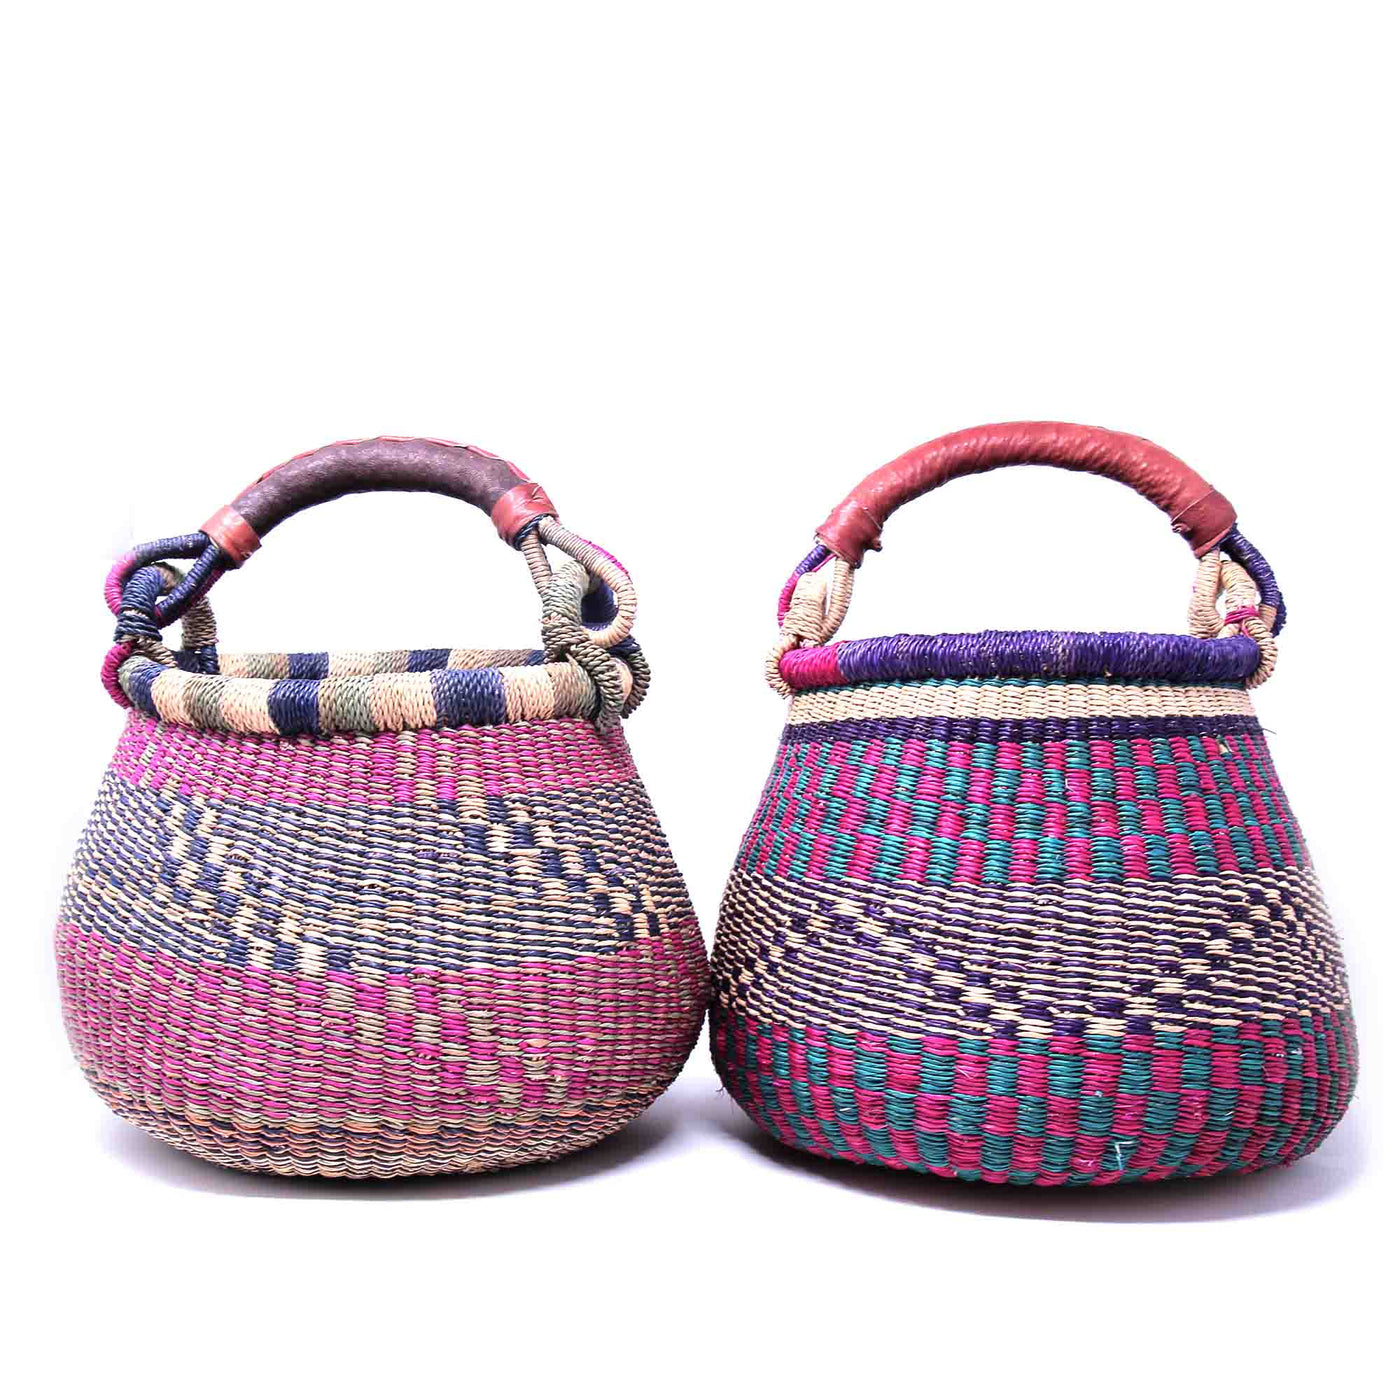 Small Bolga Pot Basket - Mixed Colors